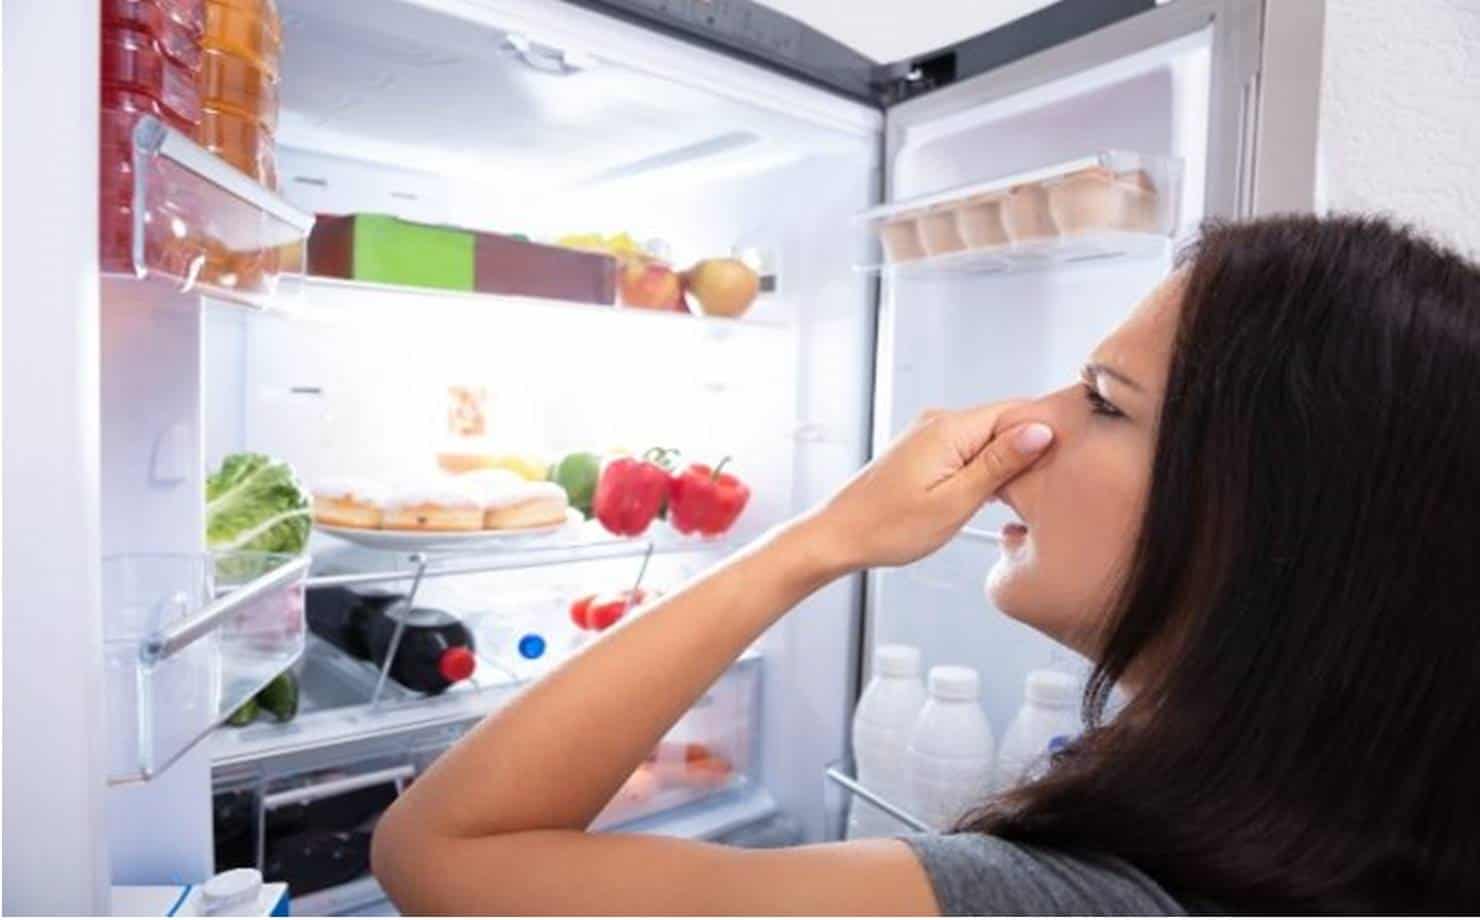 Mau cheiro na geladeira este dica simples ajudará você